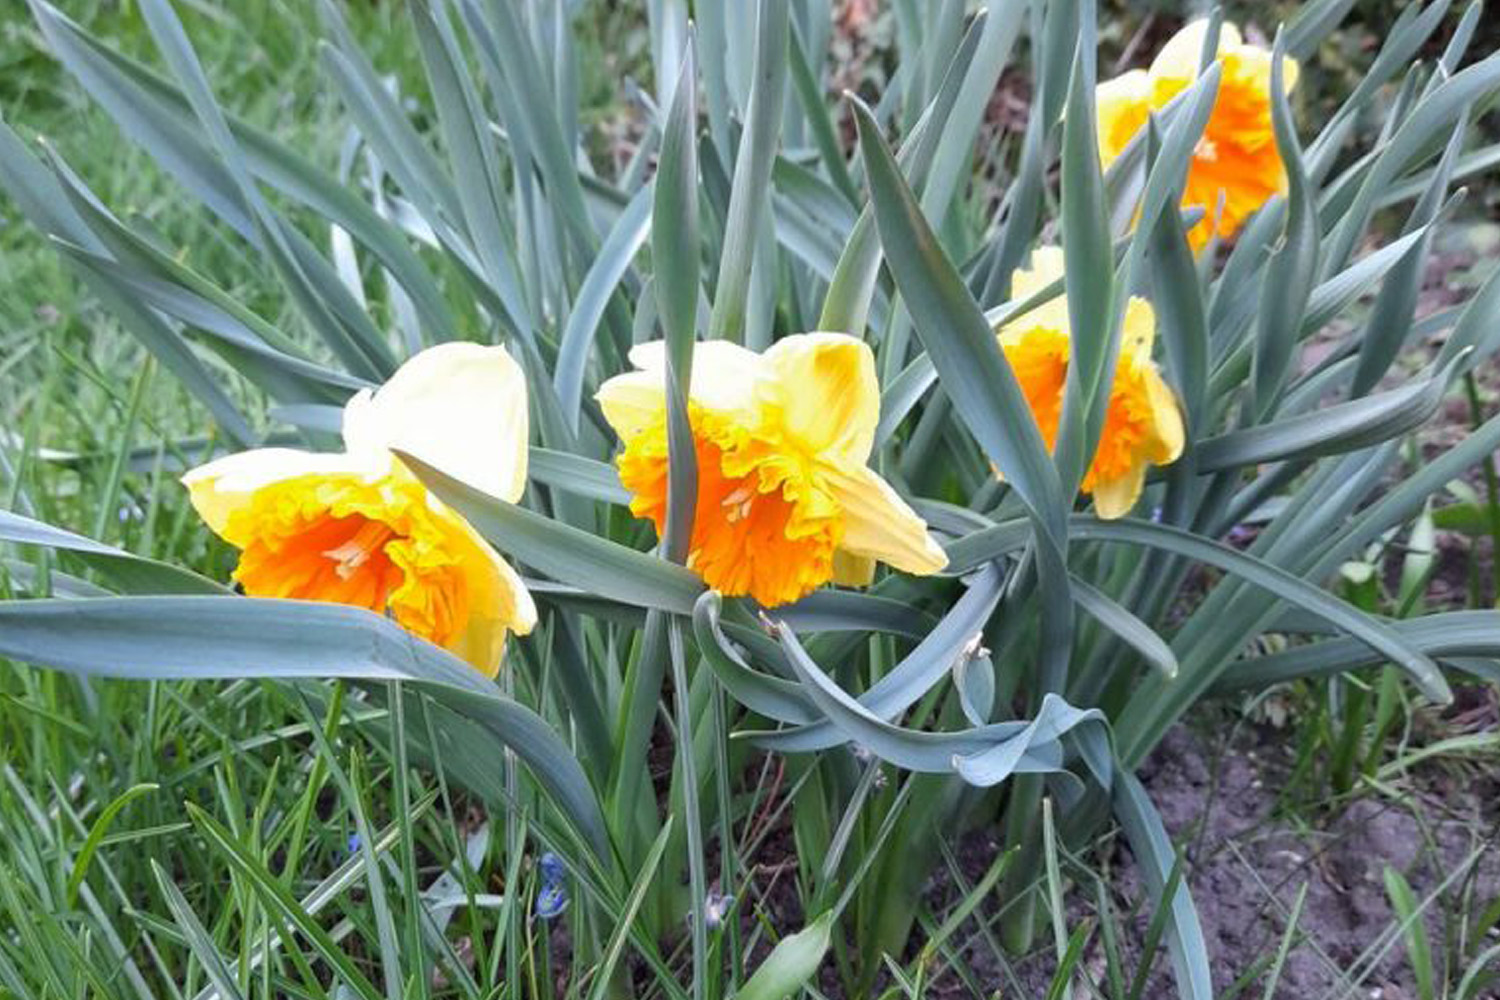 Narcyz - ulubiony kwiat wczesnej wiosny